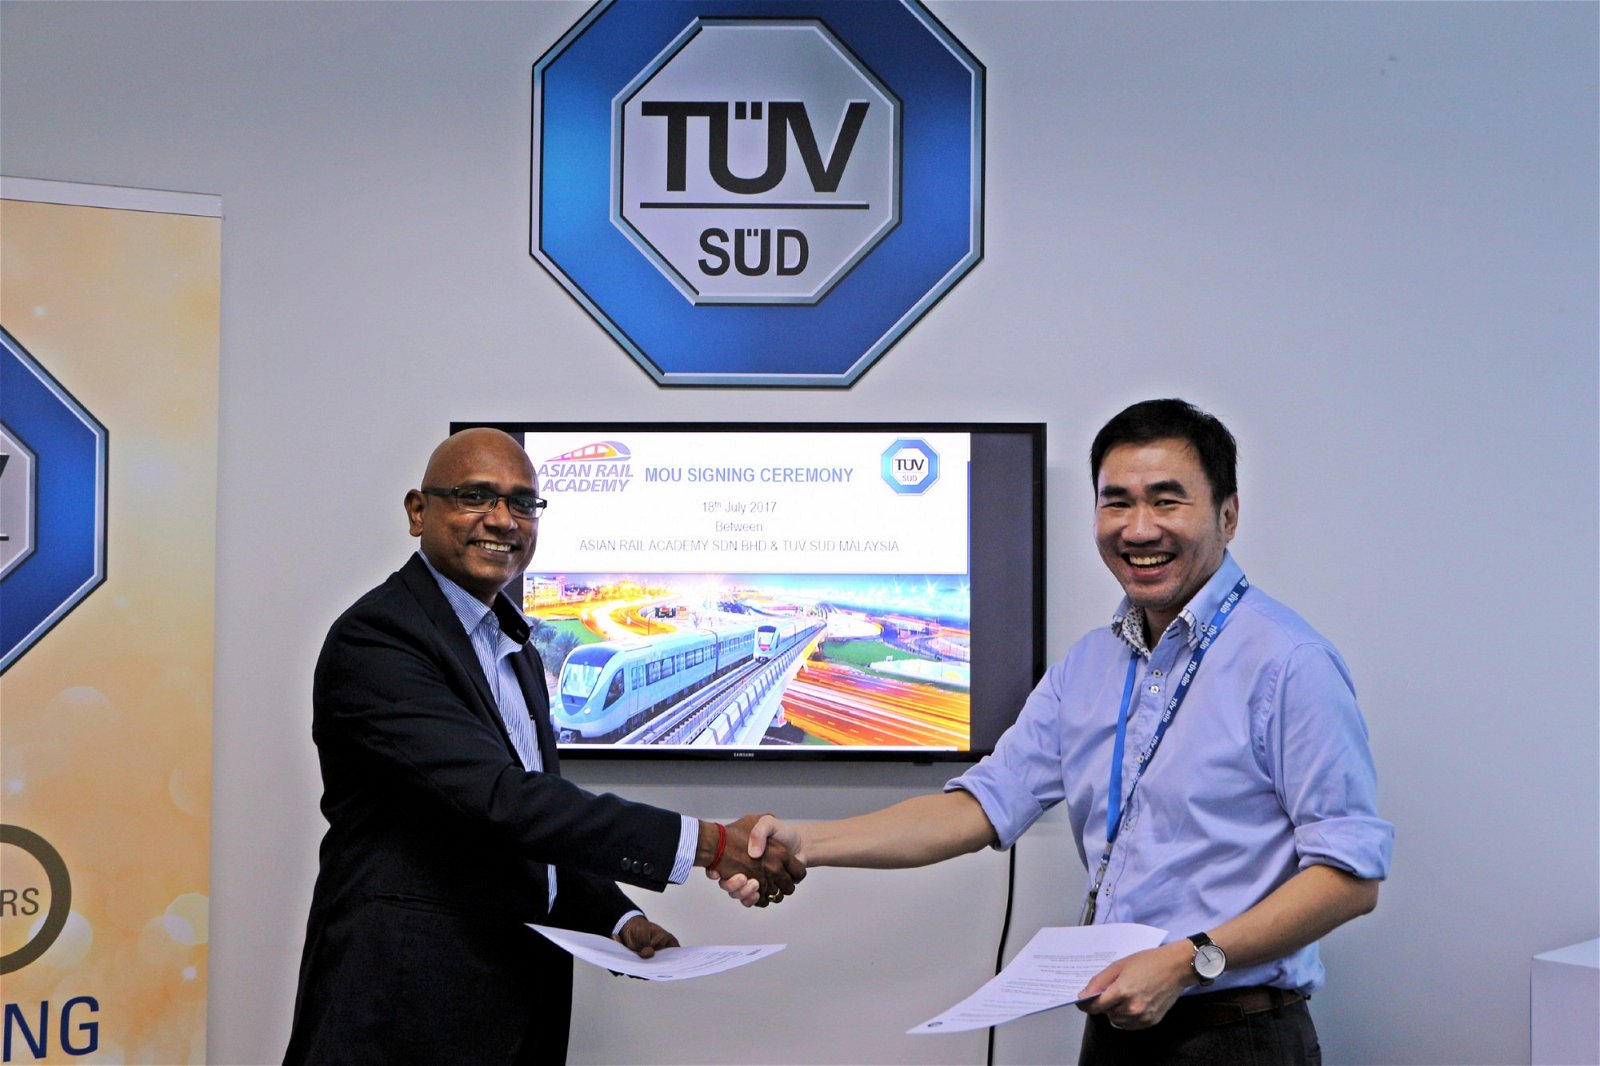 为了提高本地铁路培训水平，亚洲铁路学院特别引入英国NTAR与德国TUV SUD课程。图为玛兰与TUV SUD代表签署谅解备忘录。